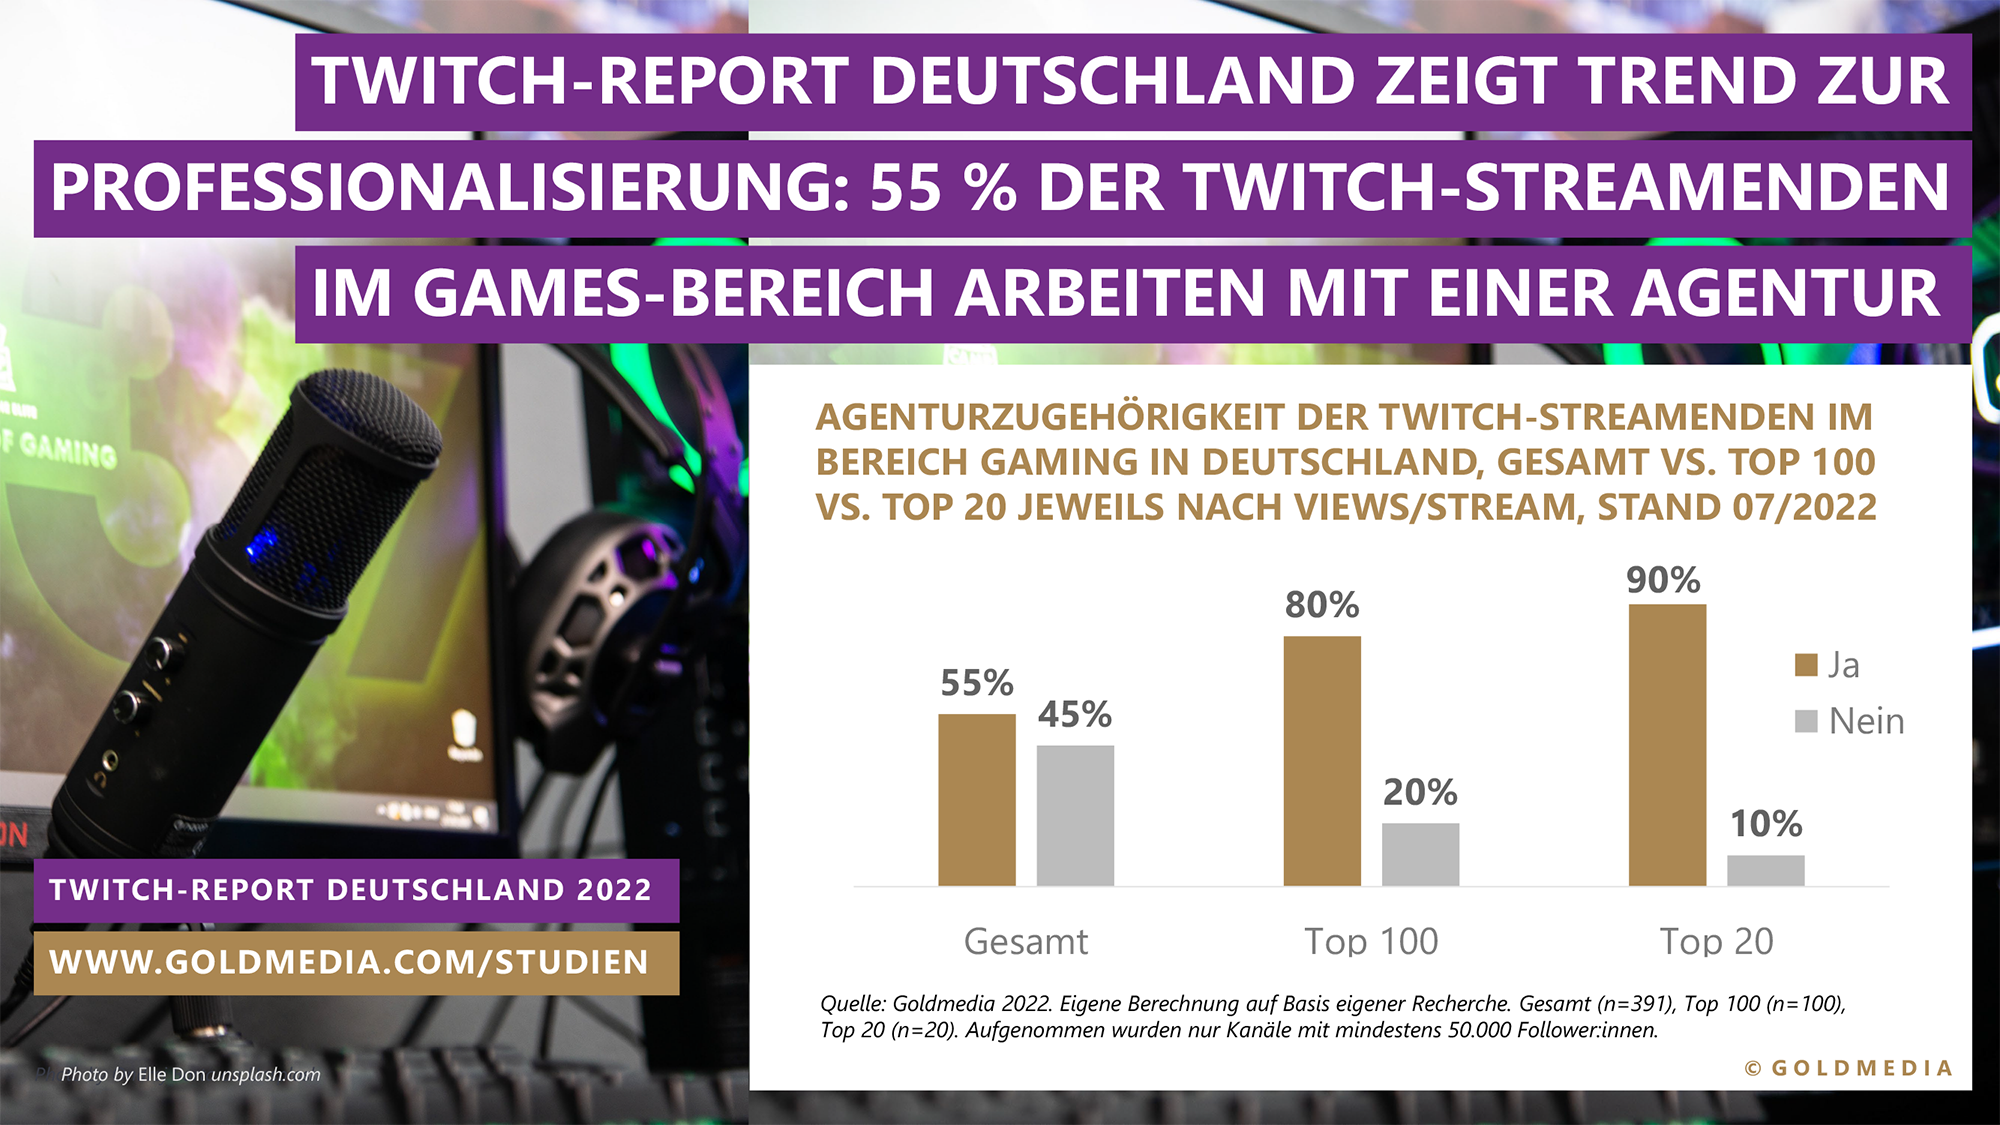 Agenturzugehrigkeit der Twitch-Streamenden im Bereich Gaming in Deutschland (Stand Juli 2022) - Quelle:  Twitch-Report Deutschland 2022/Goldmedia 2022